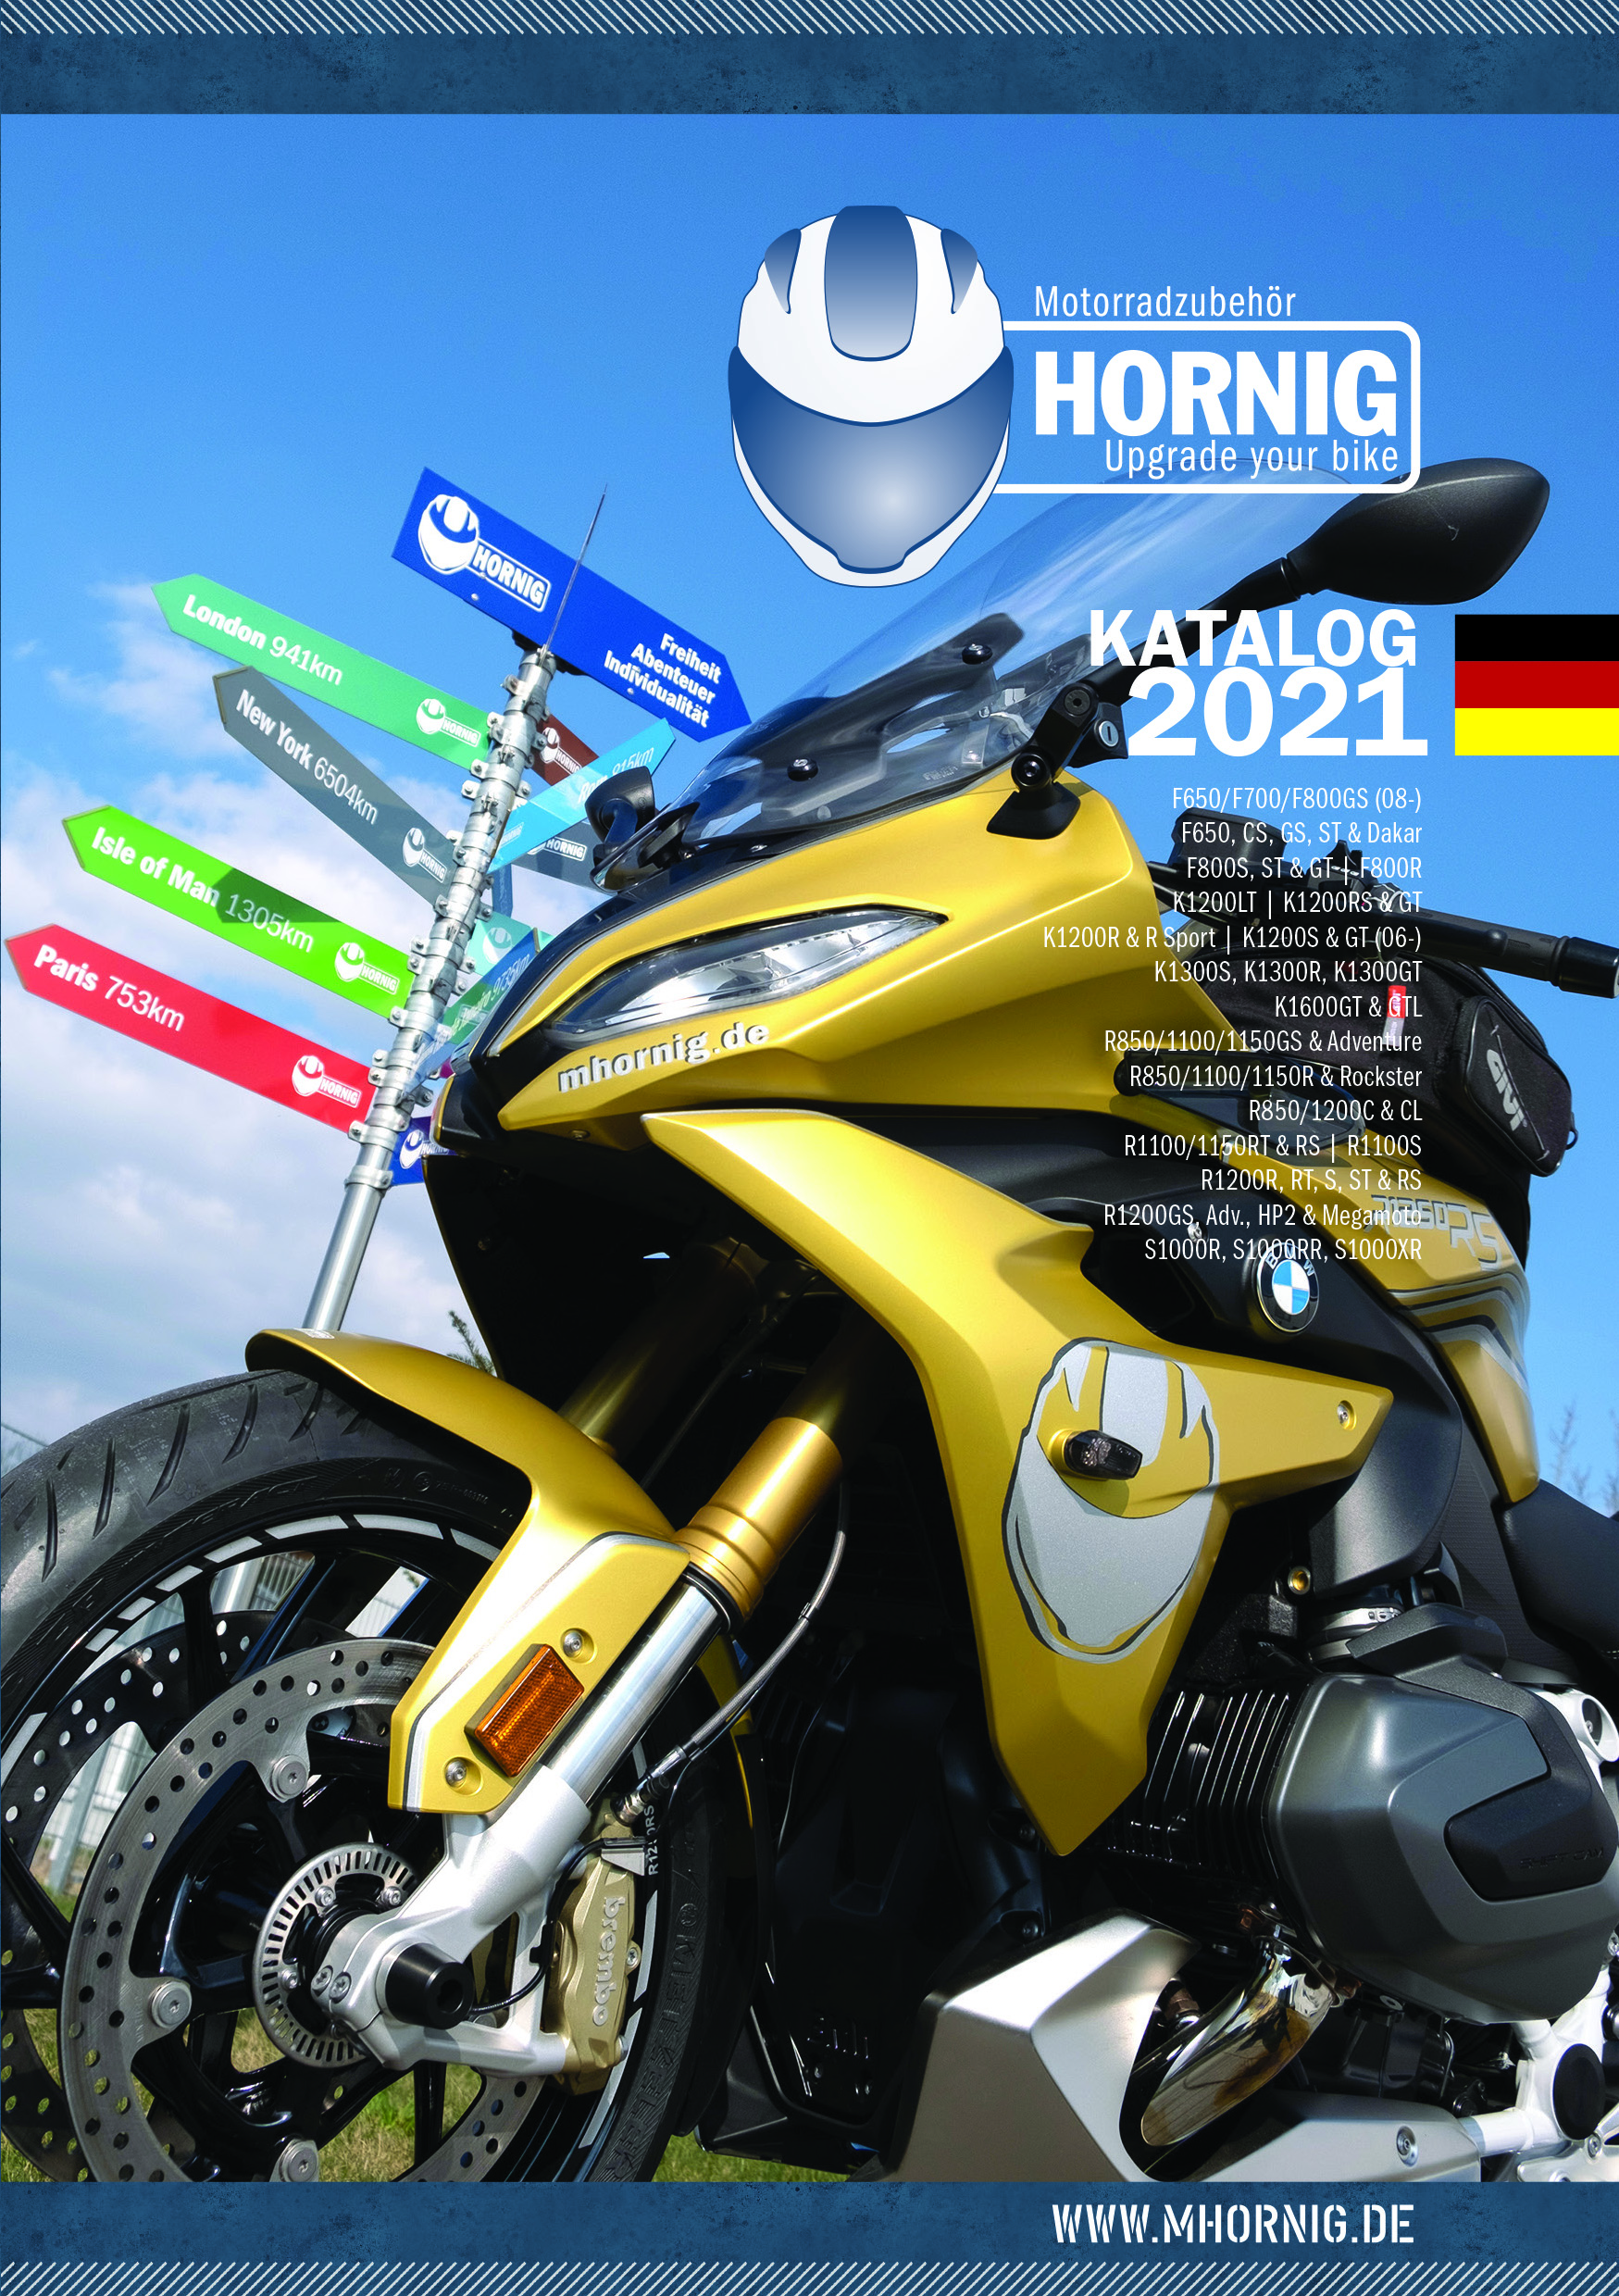 Motorradzubehör Hornig GmbH 